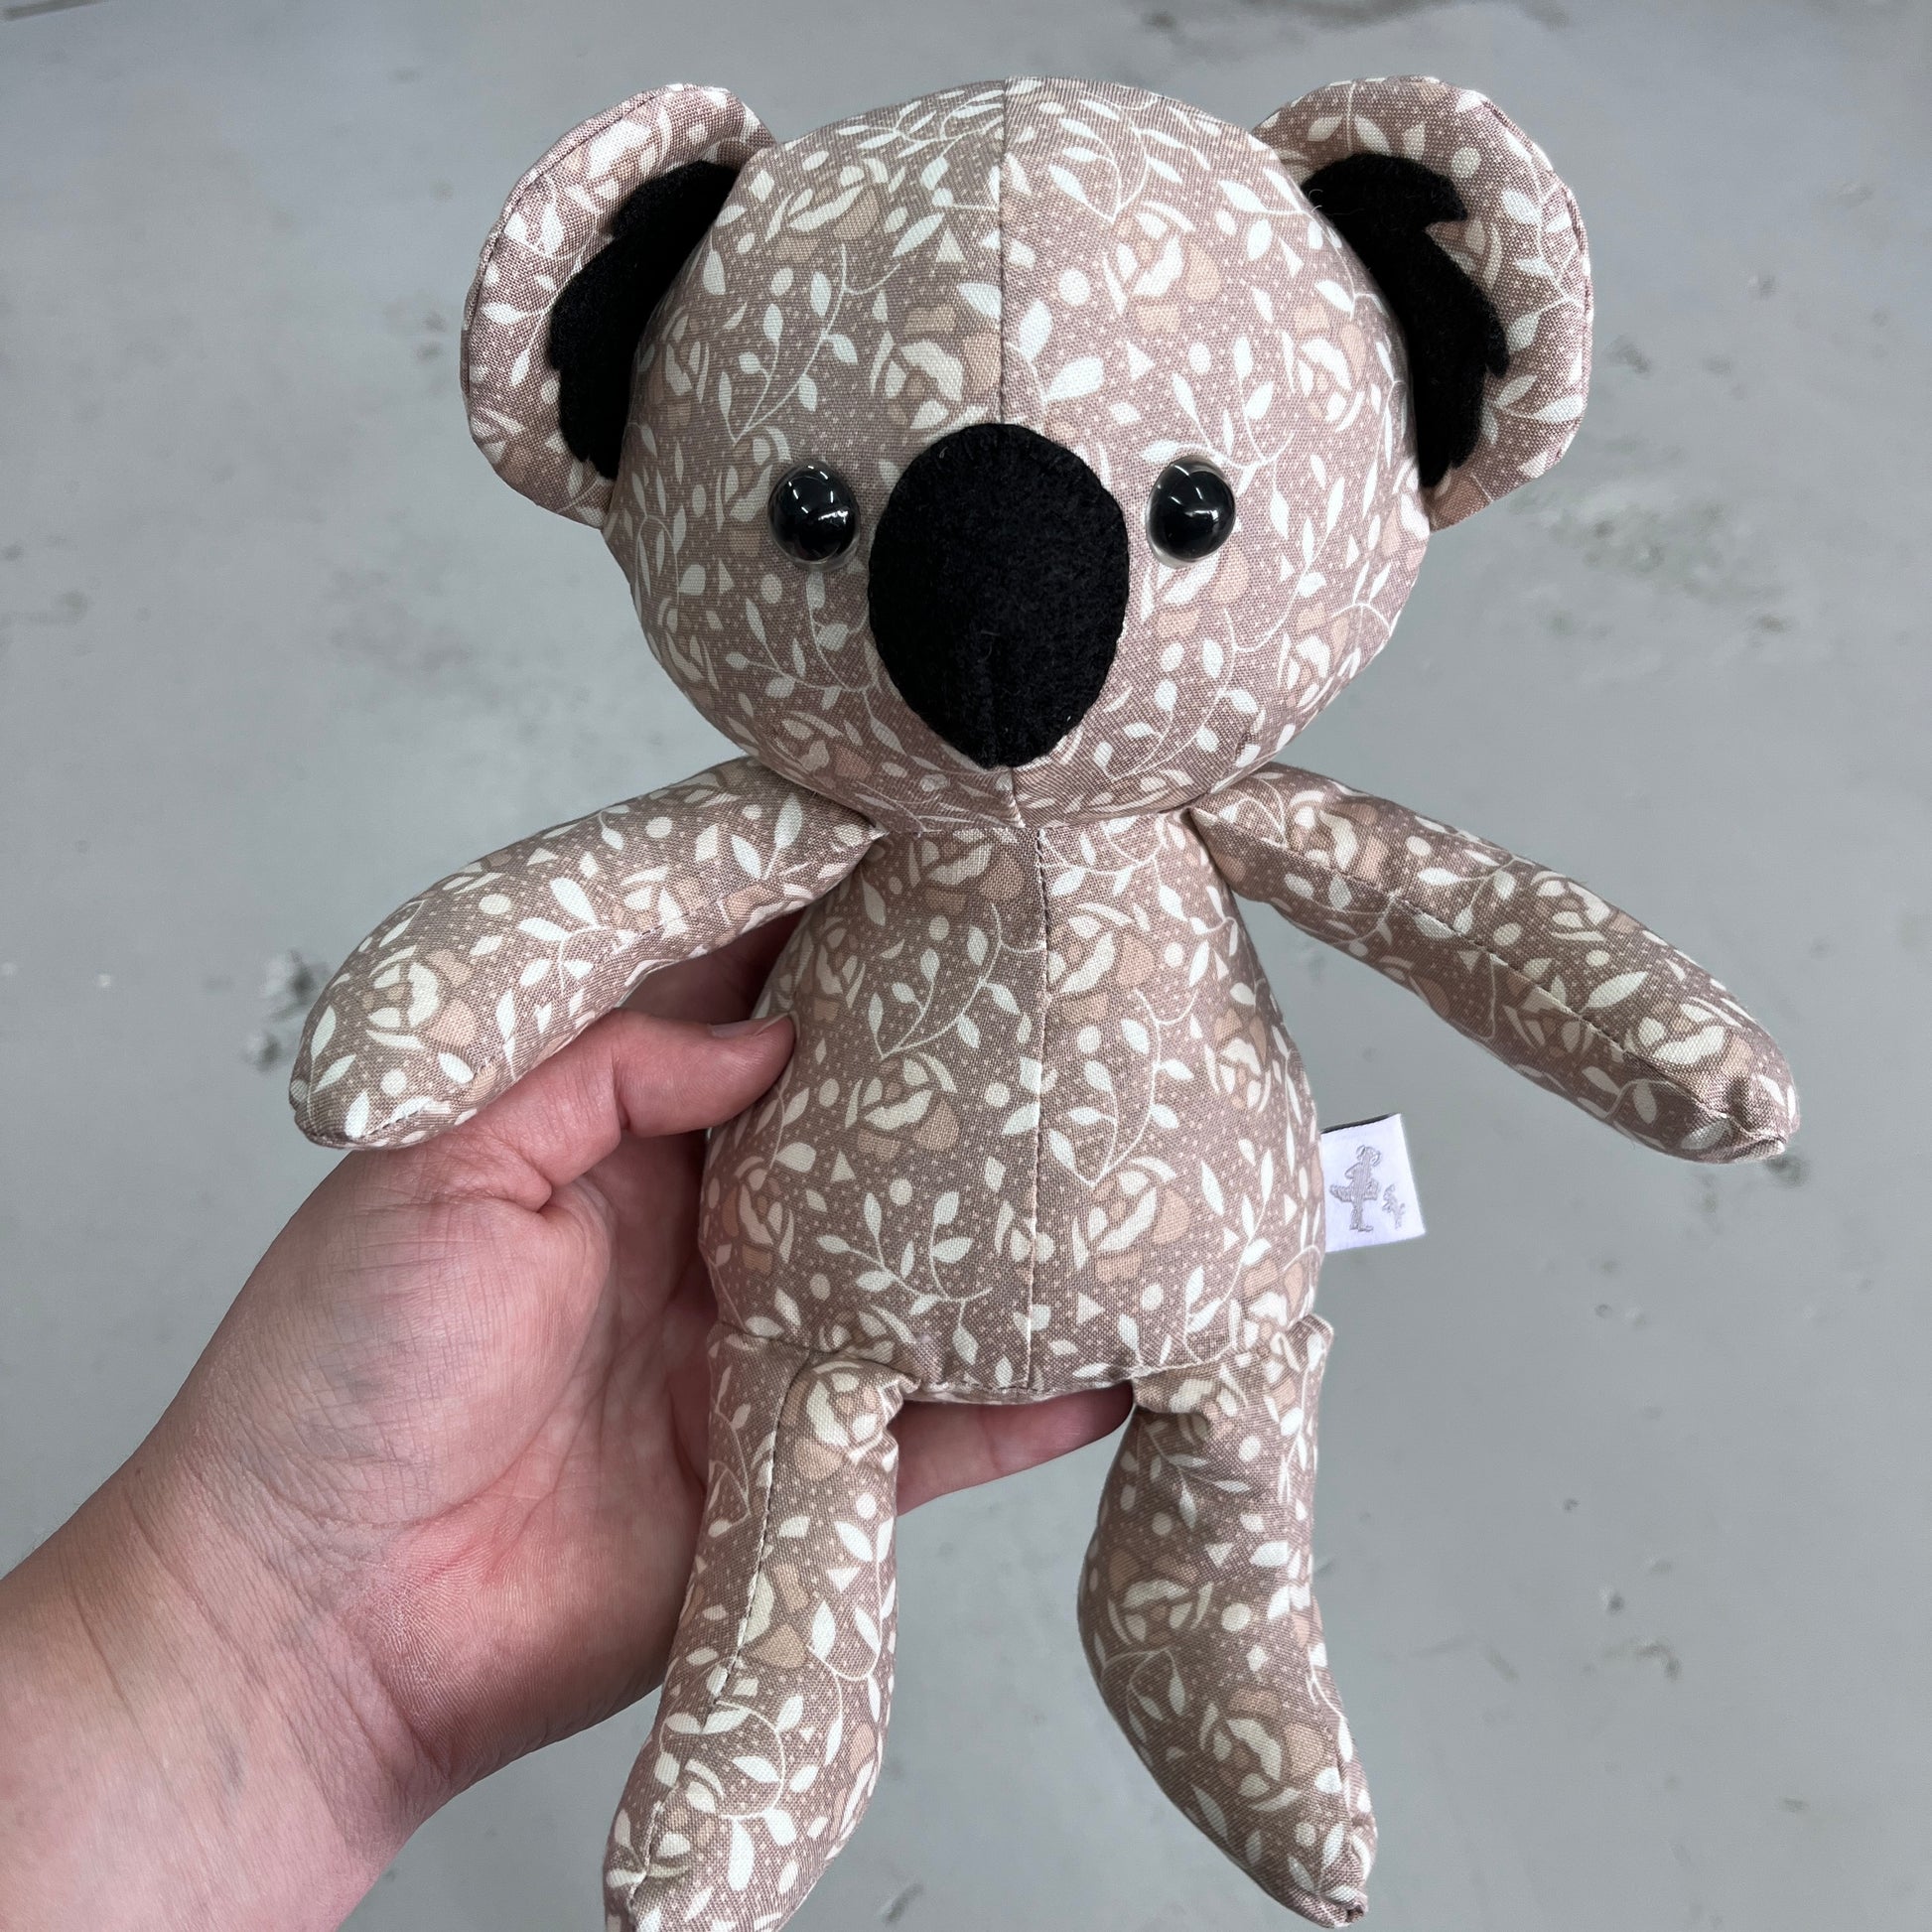 Handmade Soft Toy Baby Koala (BK1)